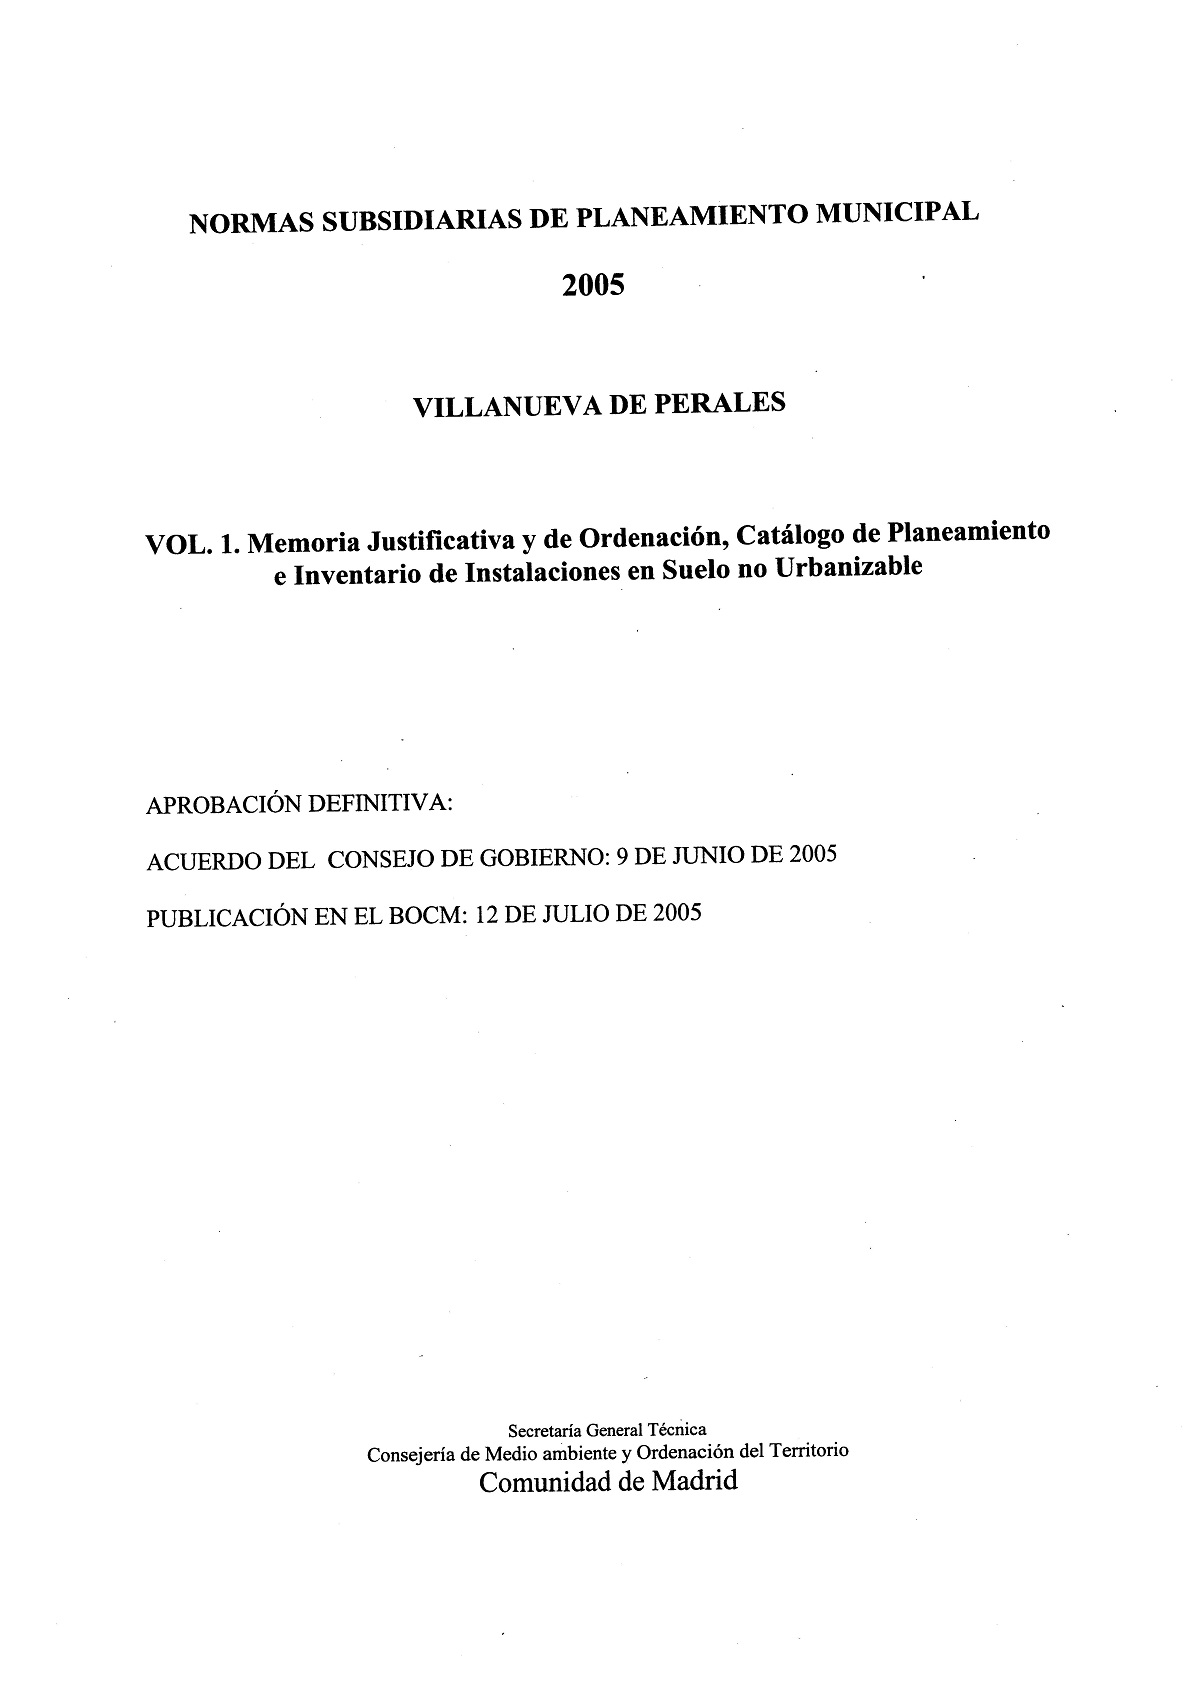 Portada de Normas Subsidiarias de Planeamiento Municipal 2005 de Villanueva de Perales